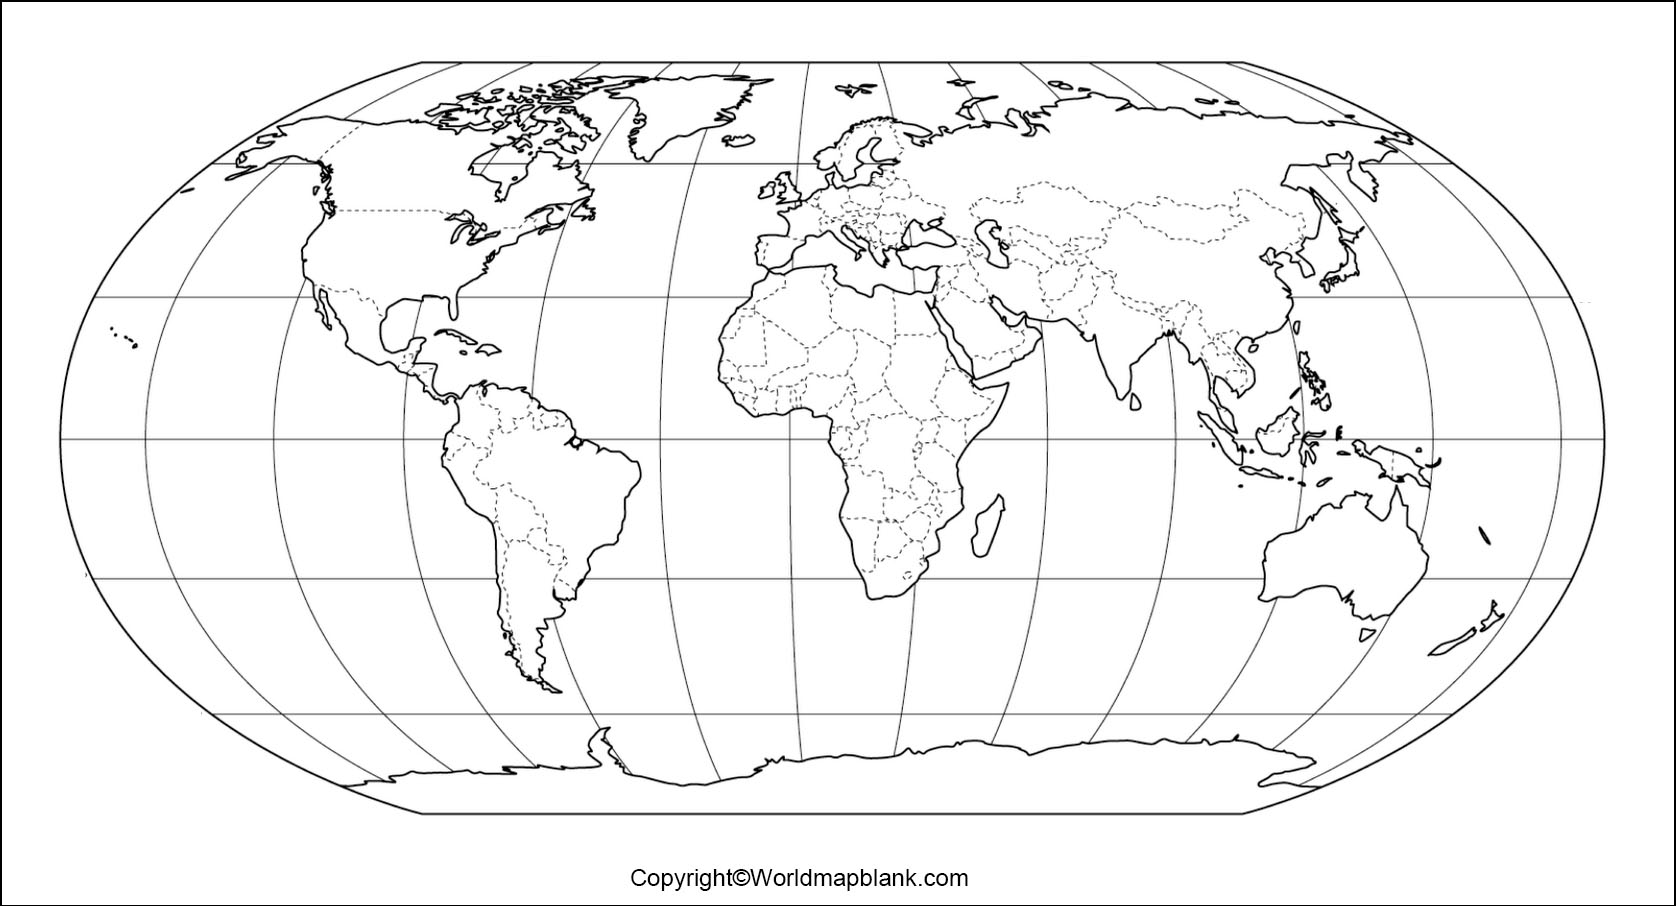 Stumme Weltkarte Mit Grenzen